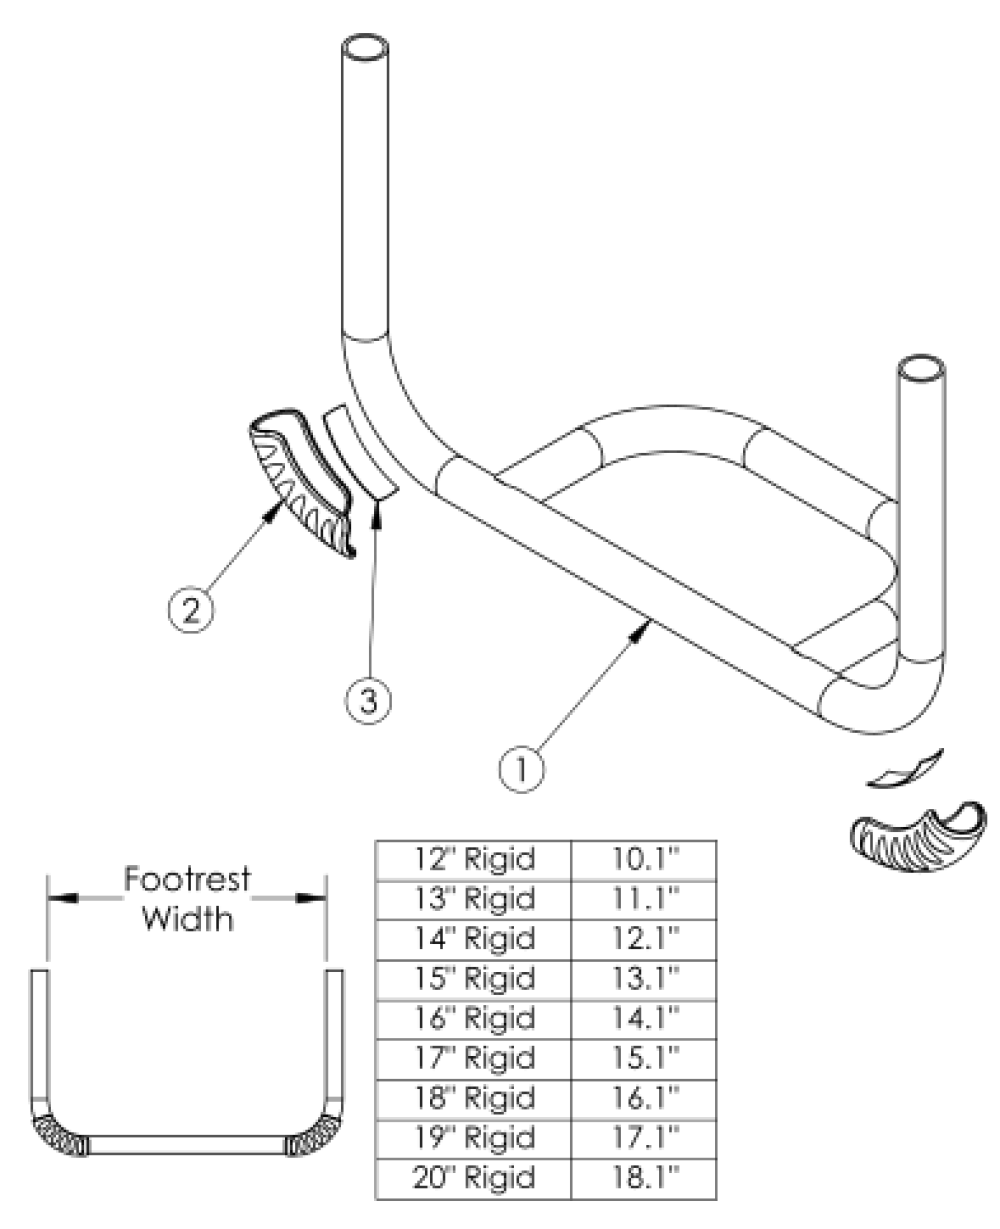 Rogue2 Footrest - Tubular Open parts diagram